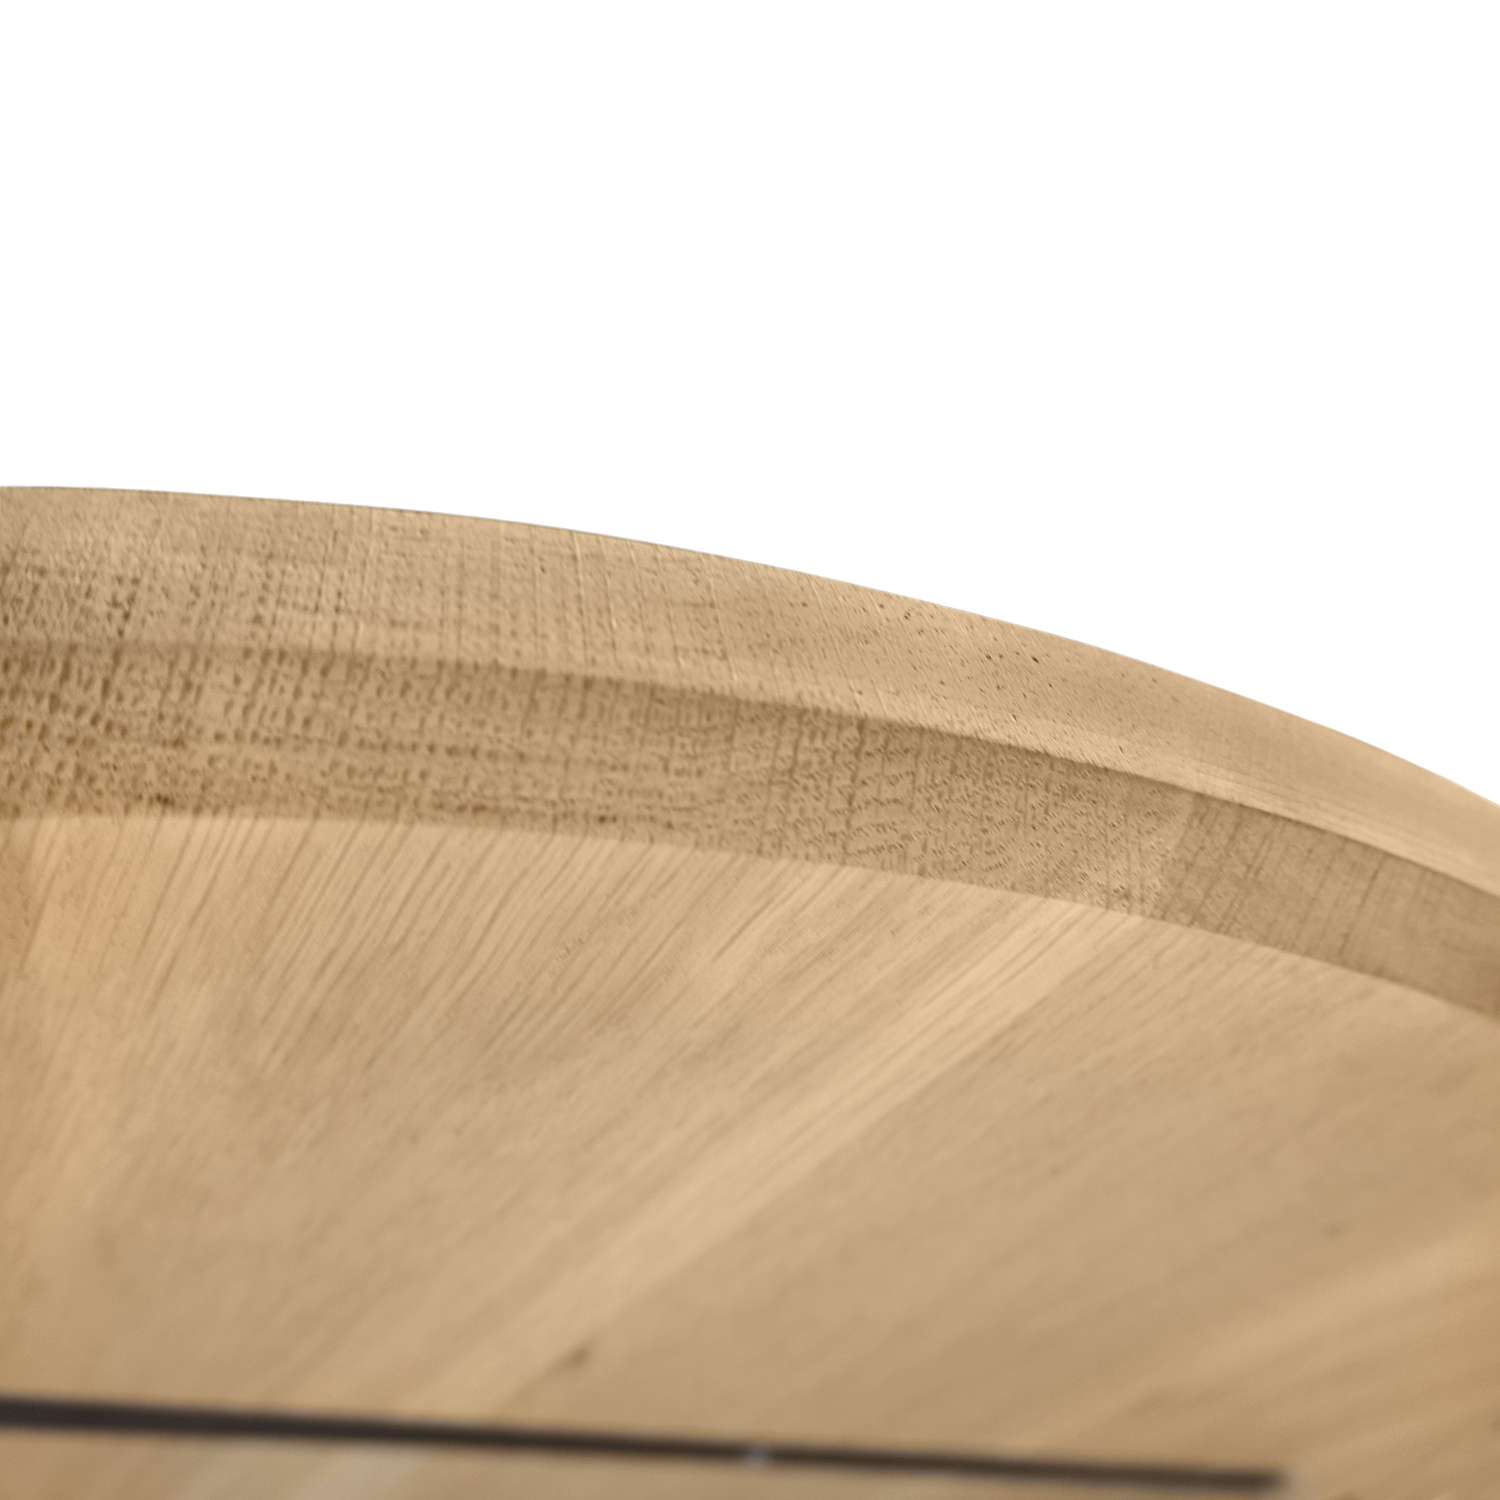  Ovaal eiken tafelblad - 4 cm dik (1-laag) - Diverse afmetingen - extra rustiek Europees eikenhout - met extra brede lamellen (circa 14-20 cm) - verlijmd kd 8-12%